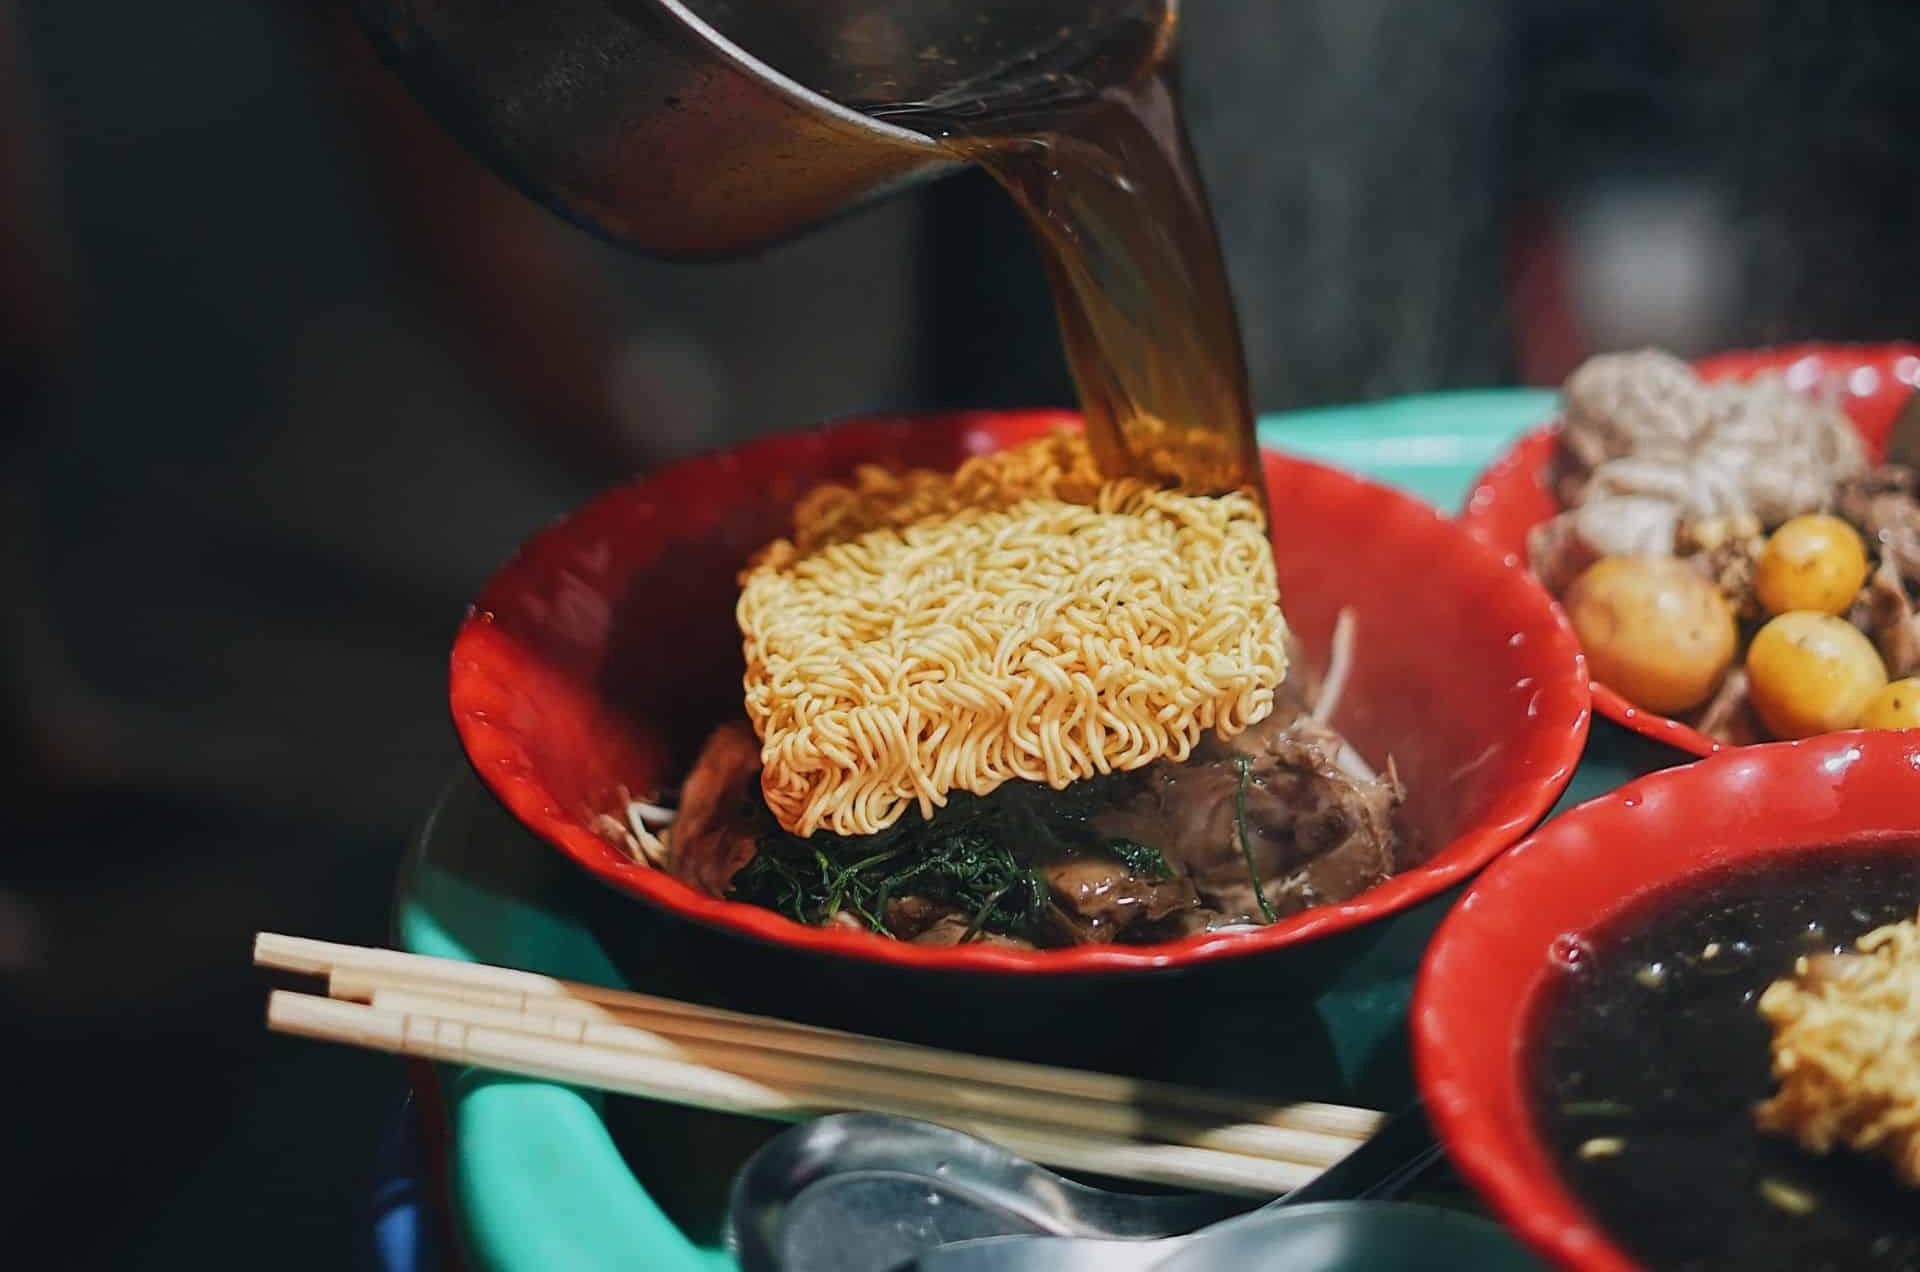 Mỳ gà tần Hàng Bồ là một món ăn nổi tiếng ở Hà Nội, được biết đến với hương vị đậm đà và hấp dẫn. Mỳ được chế biến từ gà tần, có thịt mềm và ngon, kèm theo các loại gia vị thơm ngon. Quán Hàng Bồ là địa điểm nổi tiếng để thưởng thức món mỳ gà tần này.